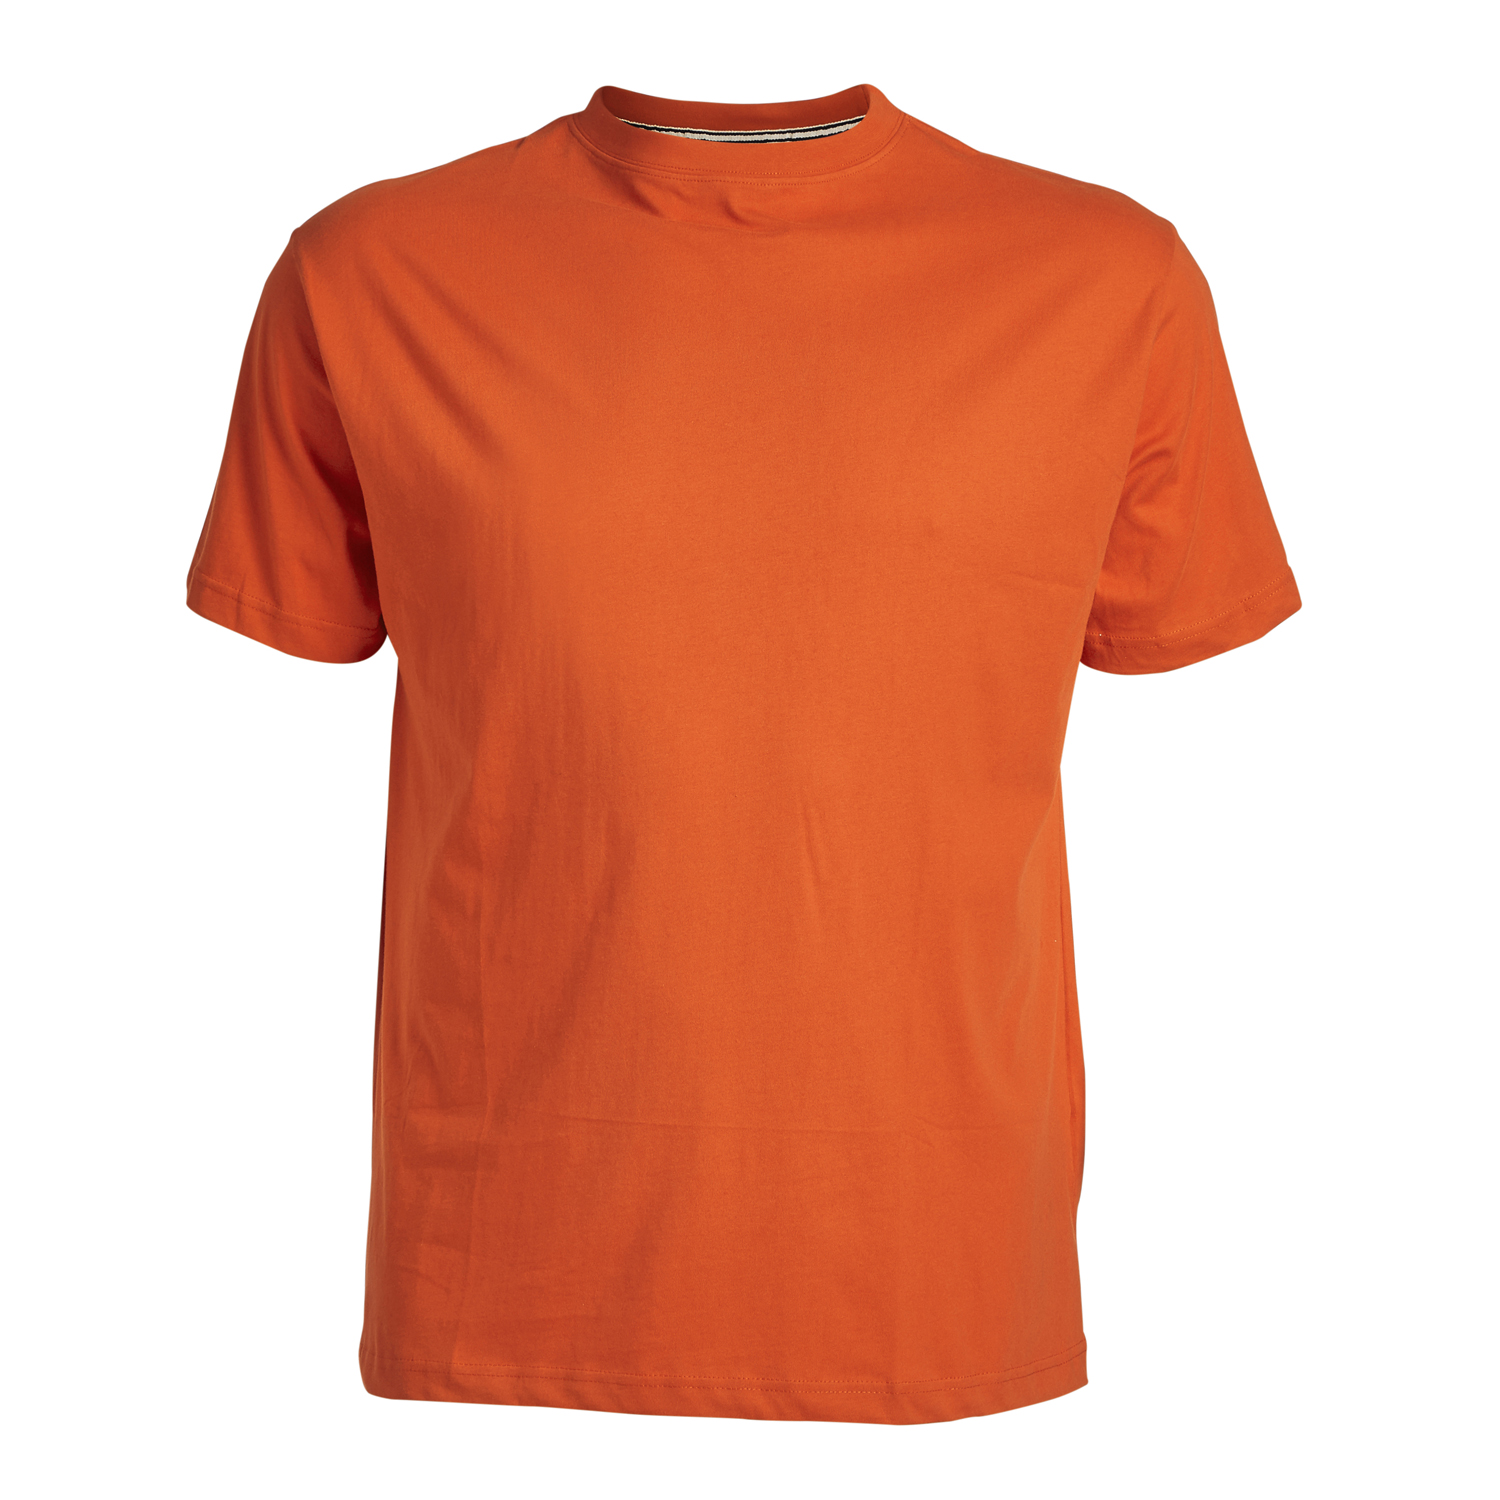 Herren Rundhals T-Shirt in orange Übergrößen 3XL - 8XL von Greyes/North 56°4